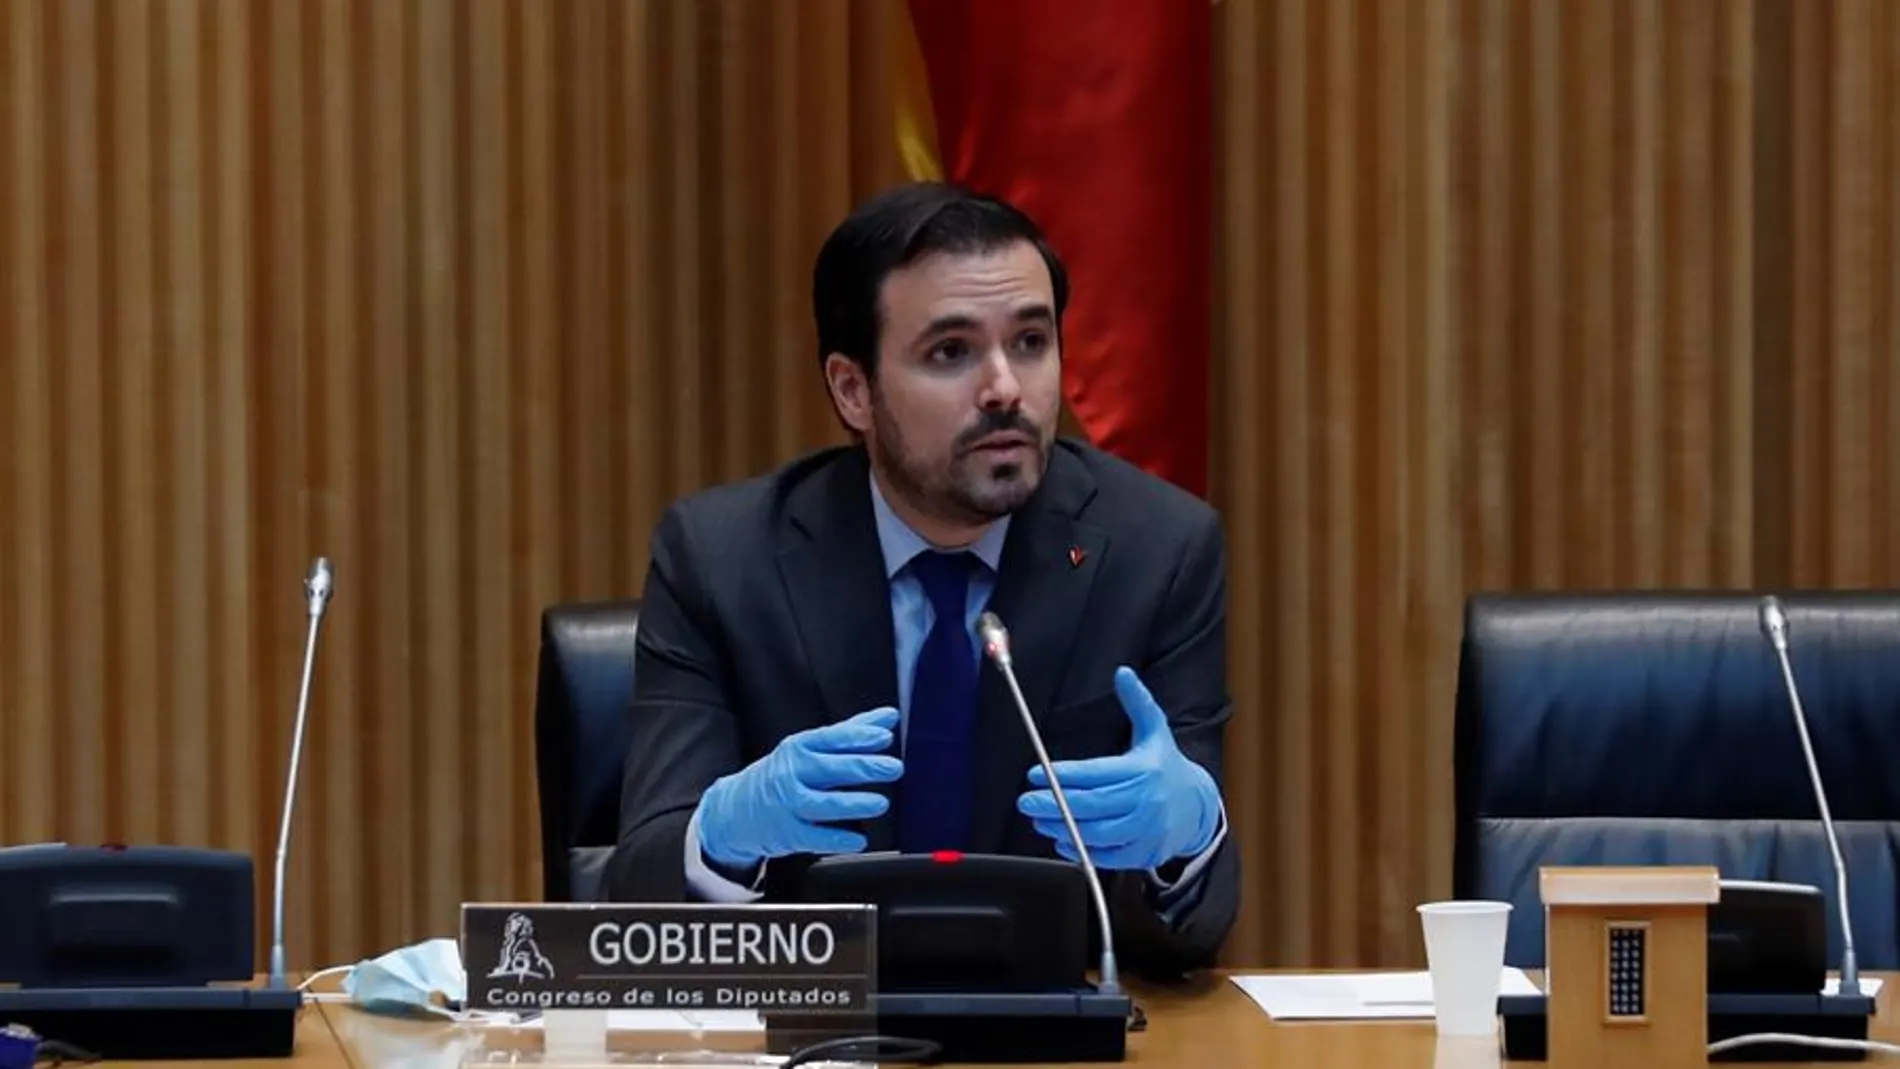 El ministro de Consumo, Alberto Garzón, comparece en la Comisión de Sanidad y Consumo del Congreso.